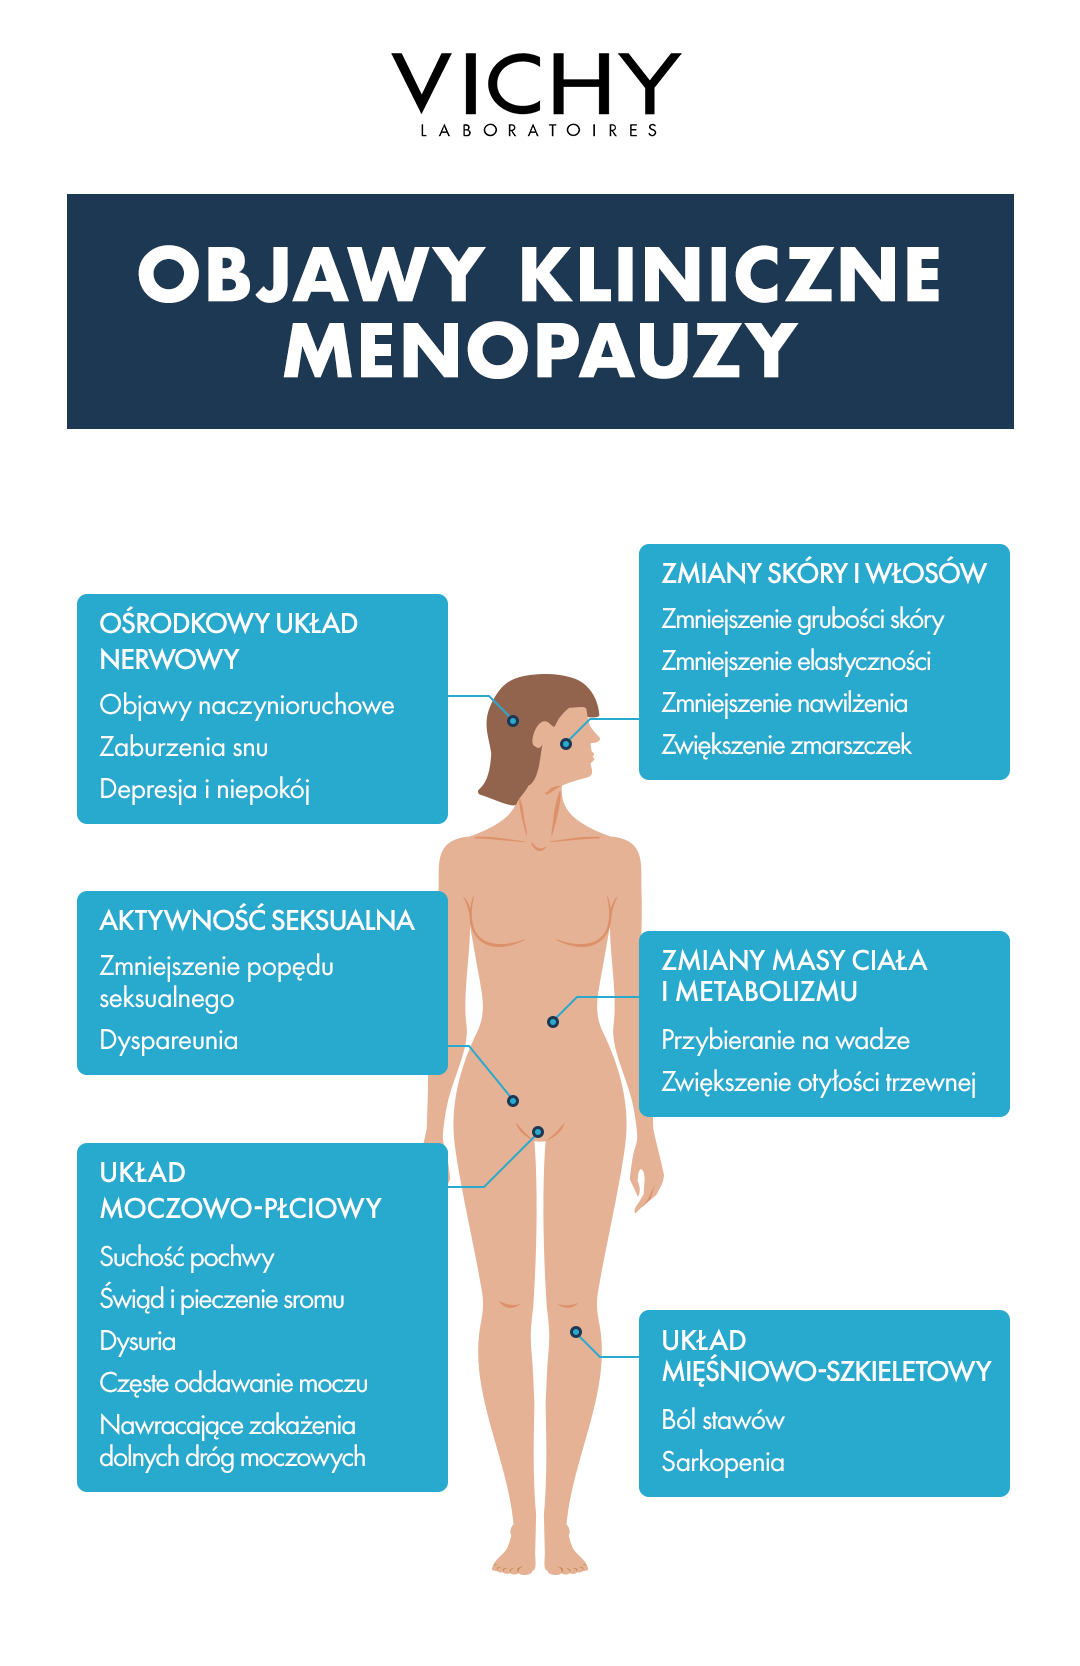 Poznaj kliniczne objawy menopauzy, a także nietypowe objawy menopauzy, które mogą Cię zakoczyć